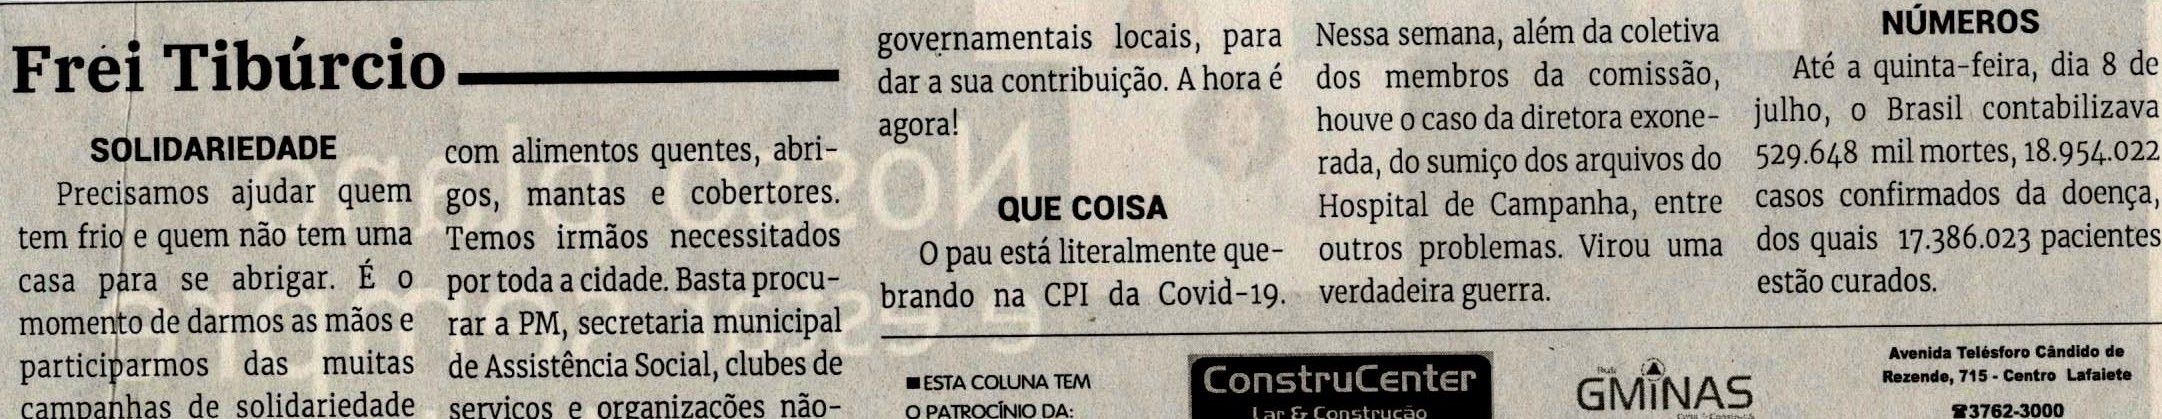 Que coisa. Jornal Correio, Conselheiro Lafaiete, 10 jul. 2021, 1584ª ed., Opinião, Frei Tibúrcio, p. 8.